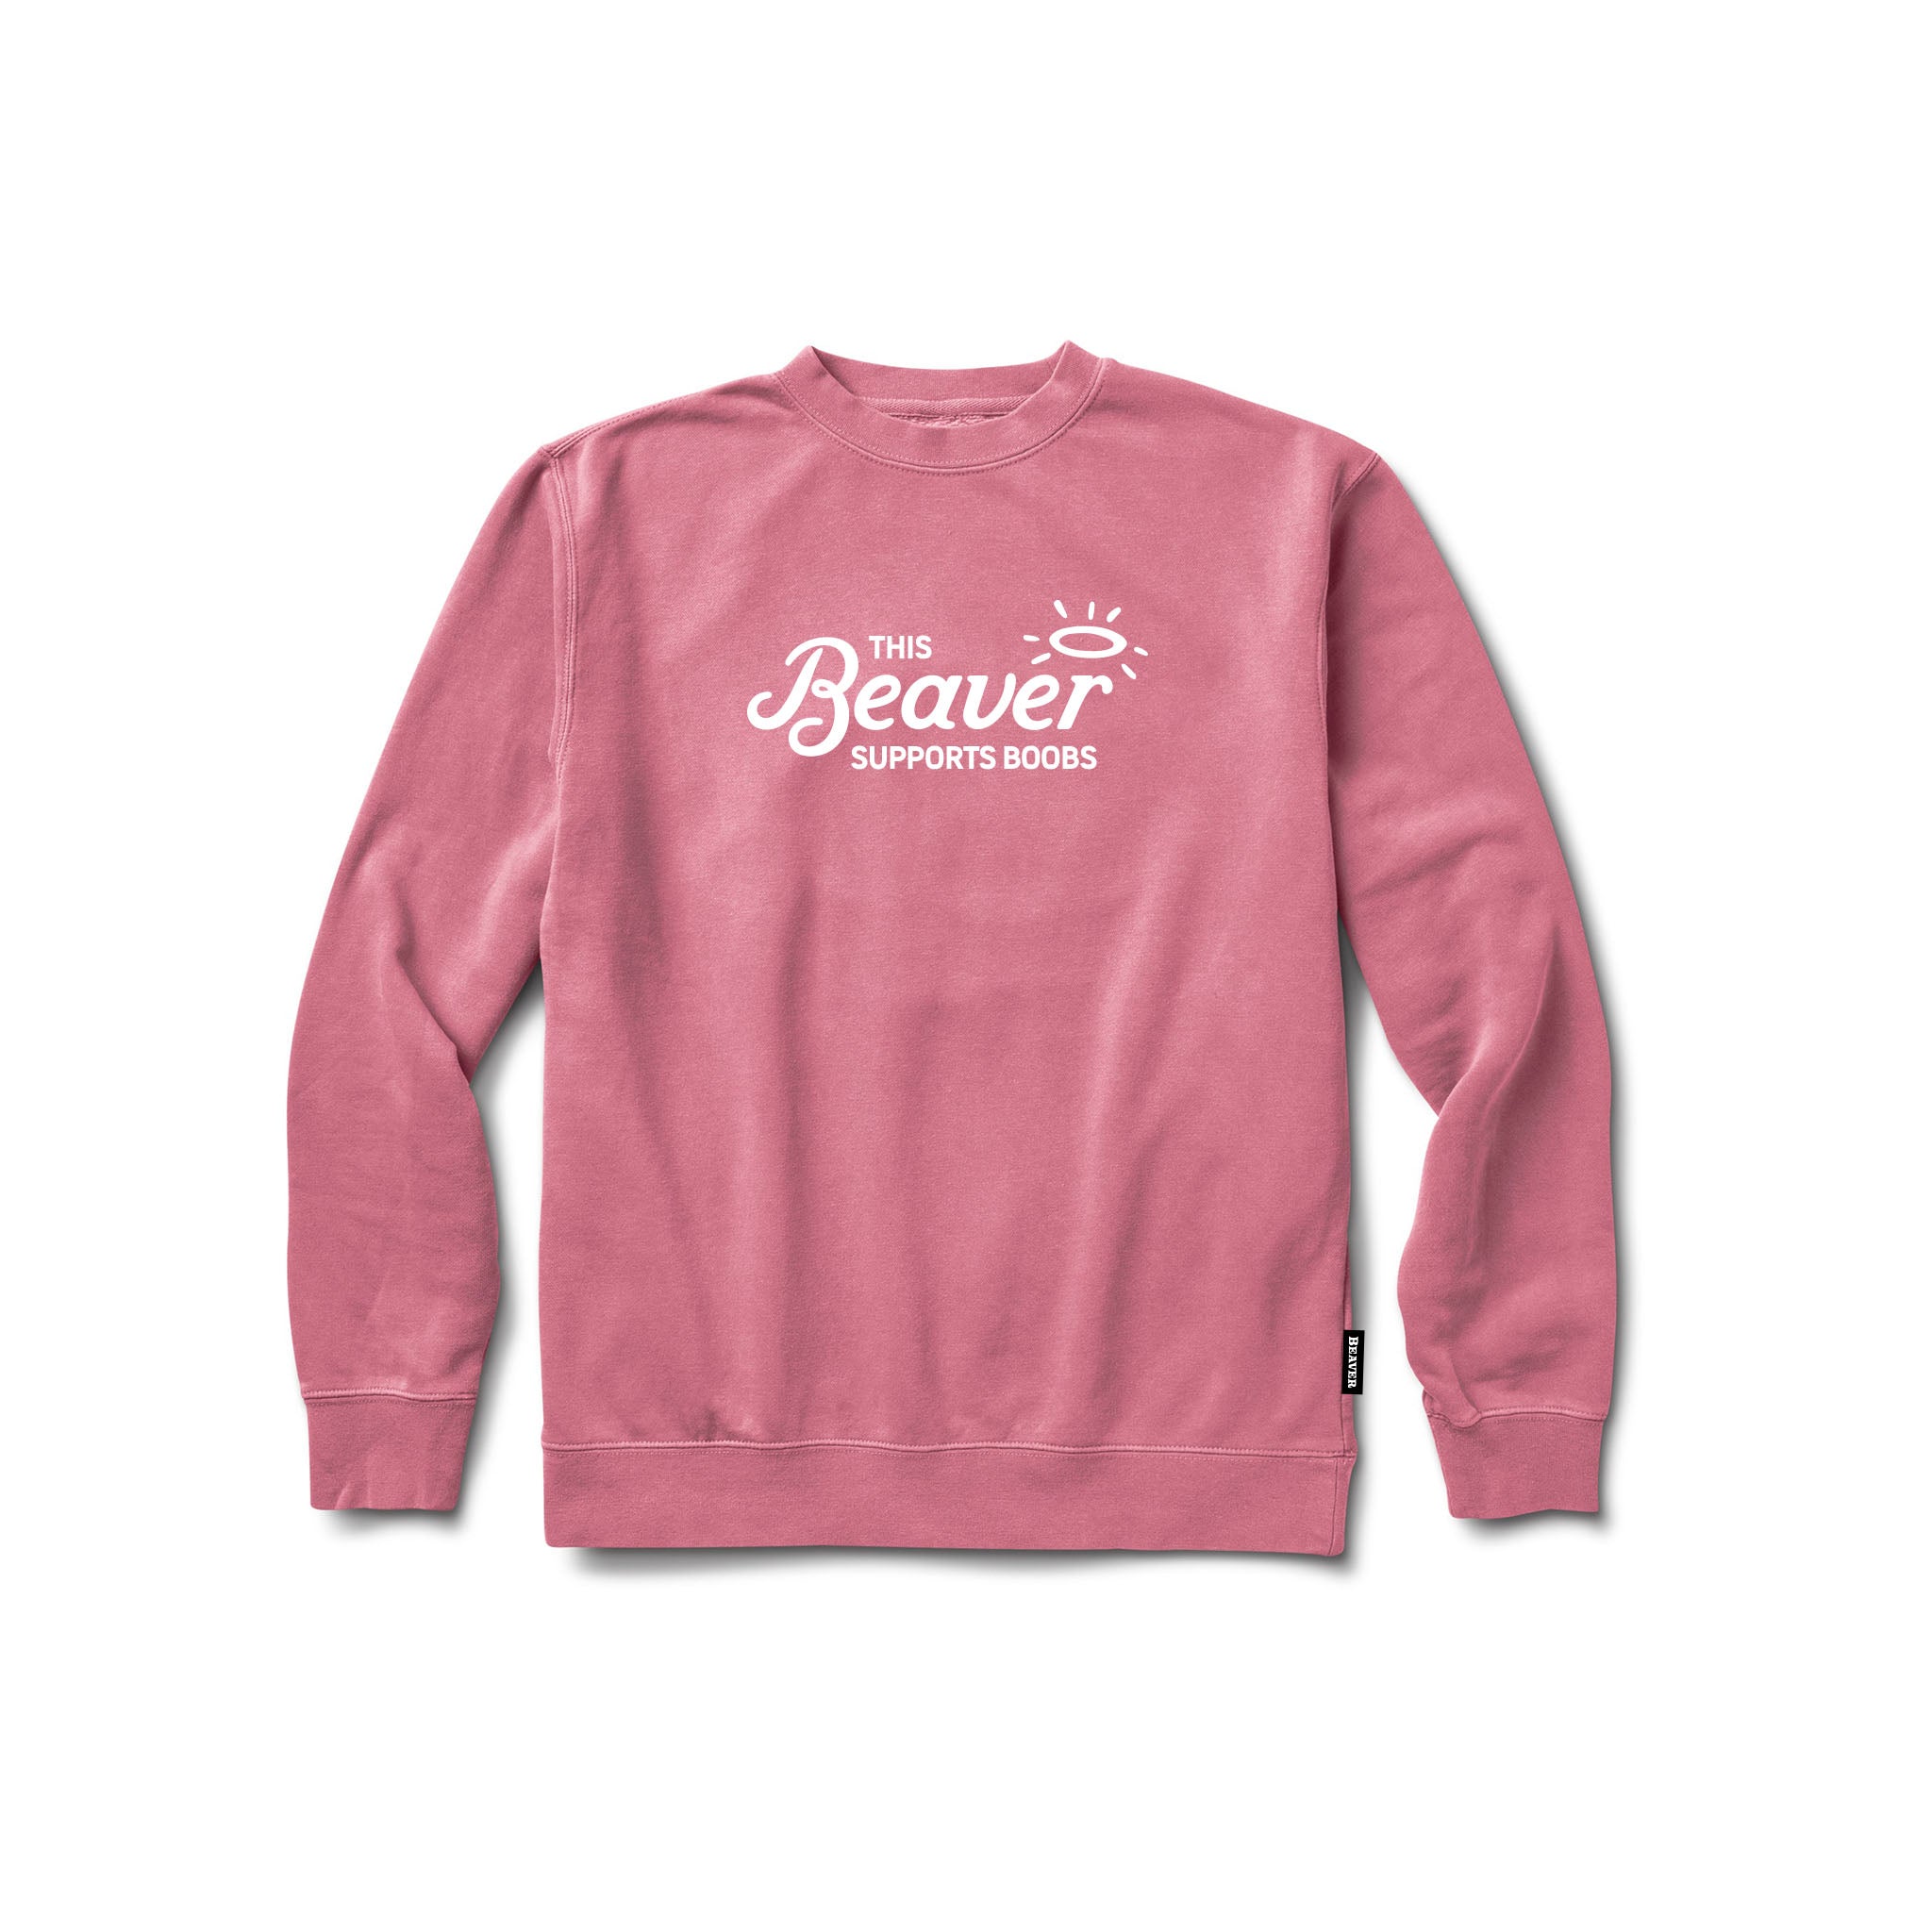 Support Boobs - Sweatshirt